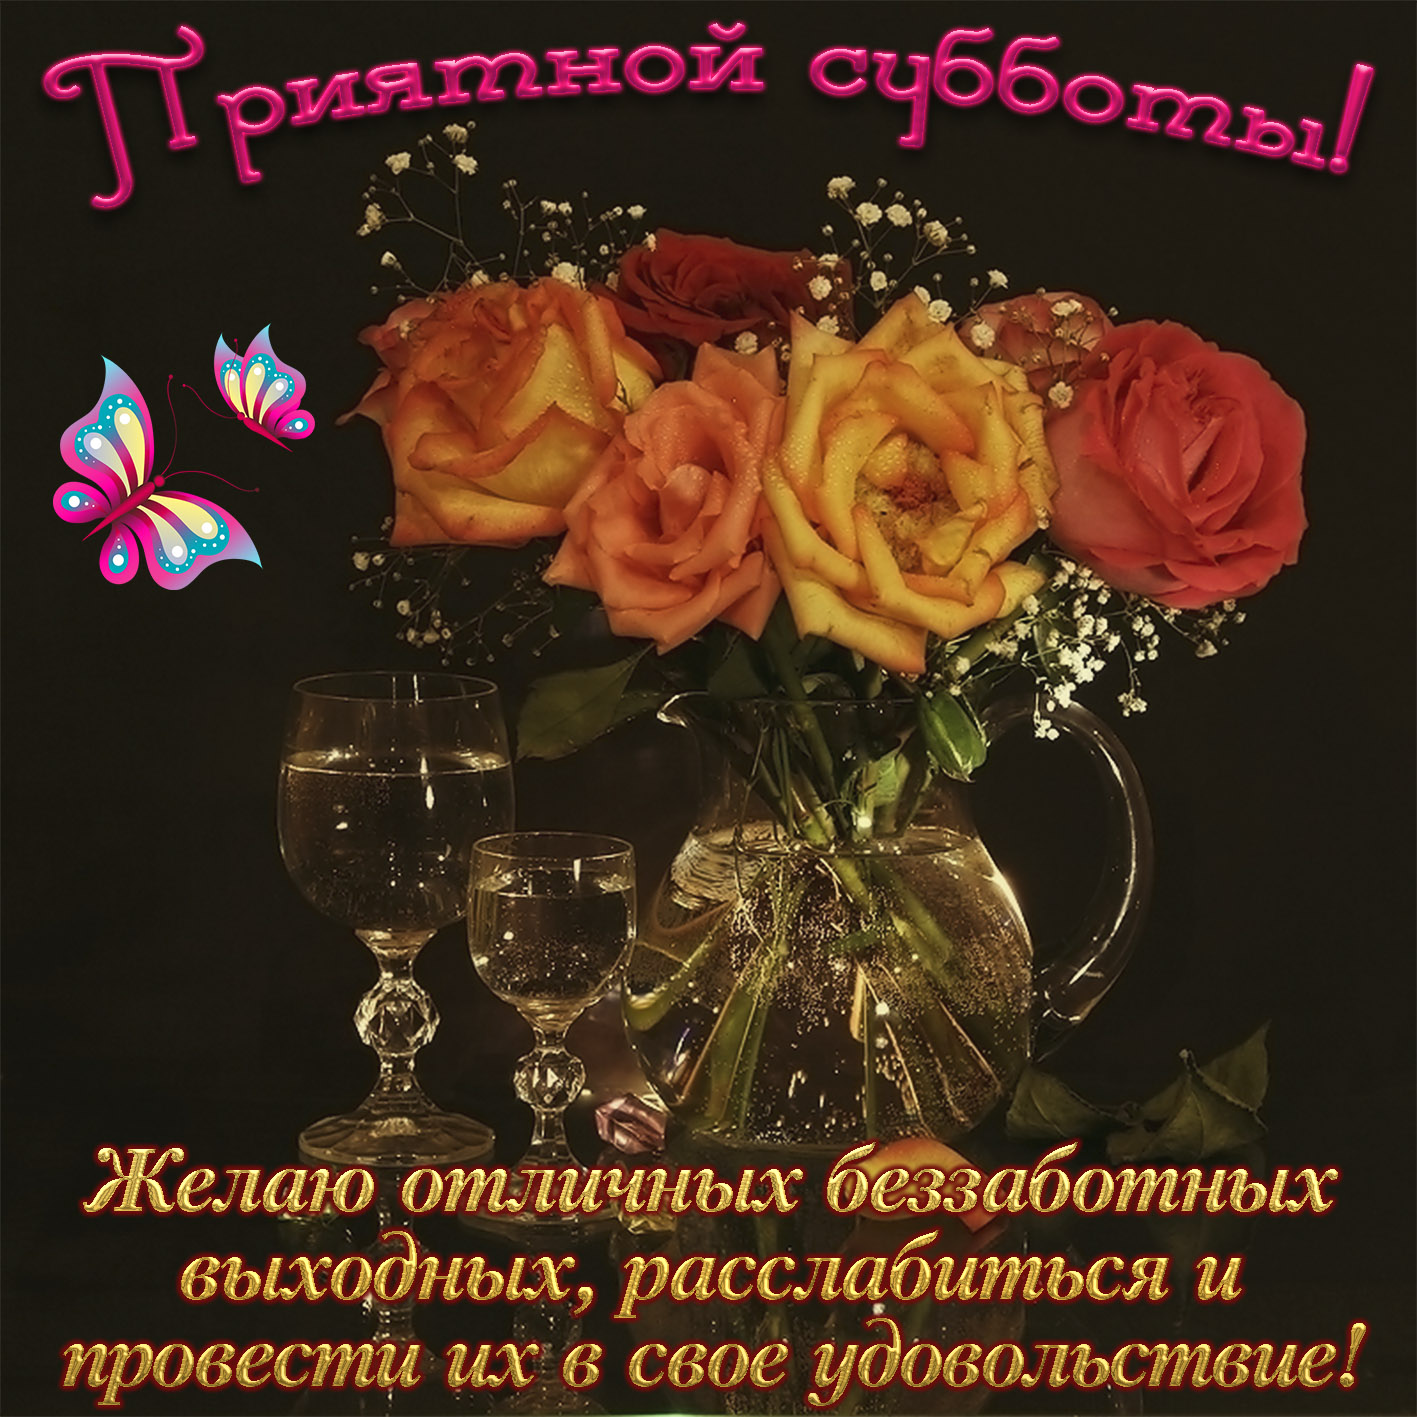 https://bonnycards.ru/images/dni-nedeli/subbota0032.jpg